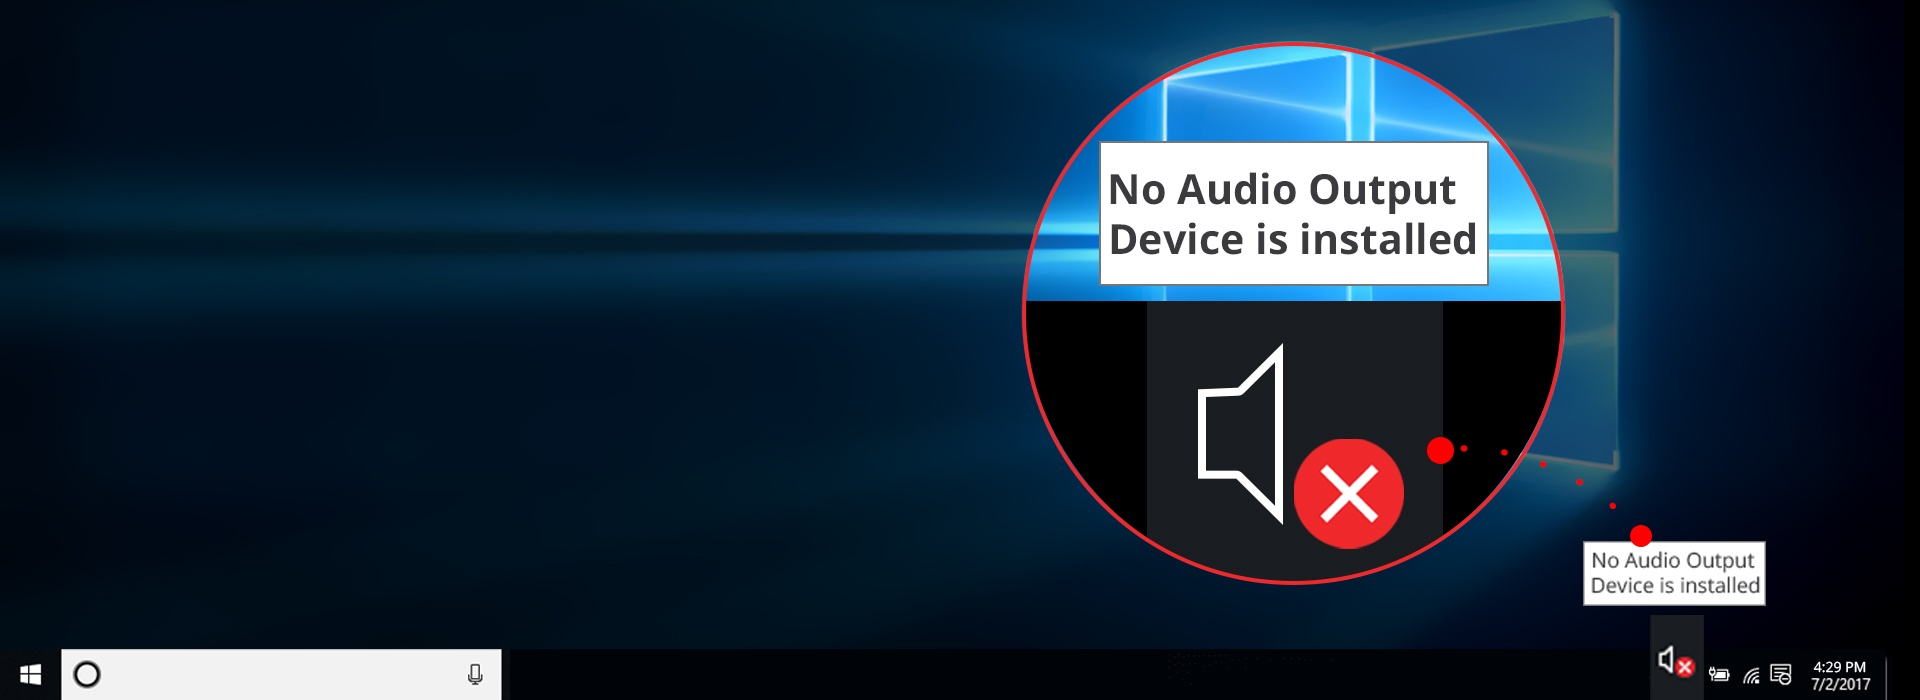 ingen ljudutgångsenhet är installerad windows 4 asus